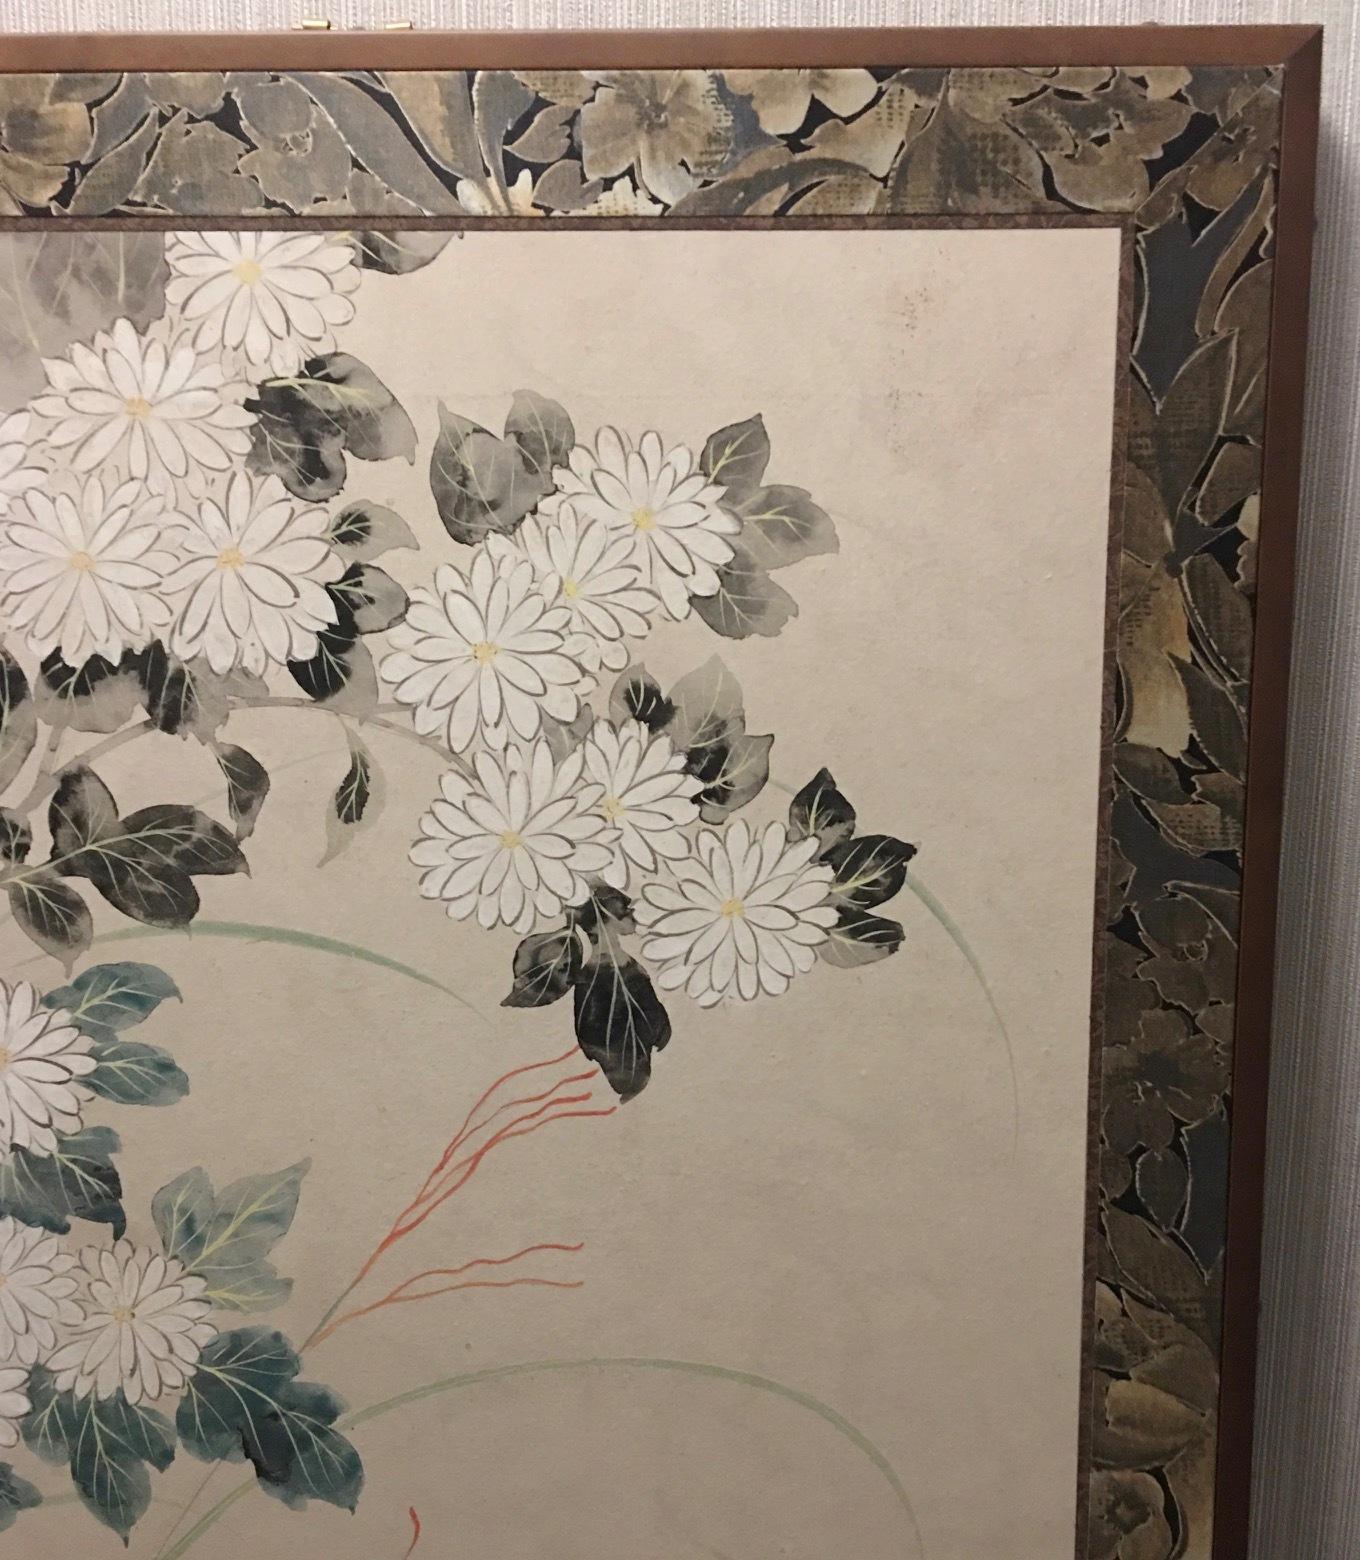 Japanischer Paravent aus der Meiji/Taisho-Periode mit zwei Tafeln, die reich auf Maulbeerpapier gemalt sind und Chrysanthemen und Morgenlilien auf elfenbeinfarbenem Hintergrund zeigen. Das Stück ist mit feinem Brokat umrahmt und auf einen schwarz